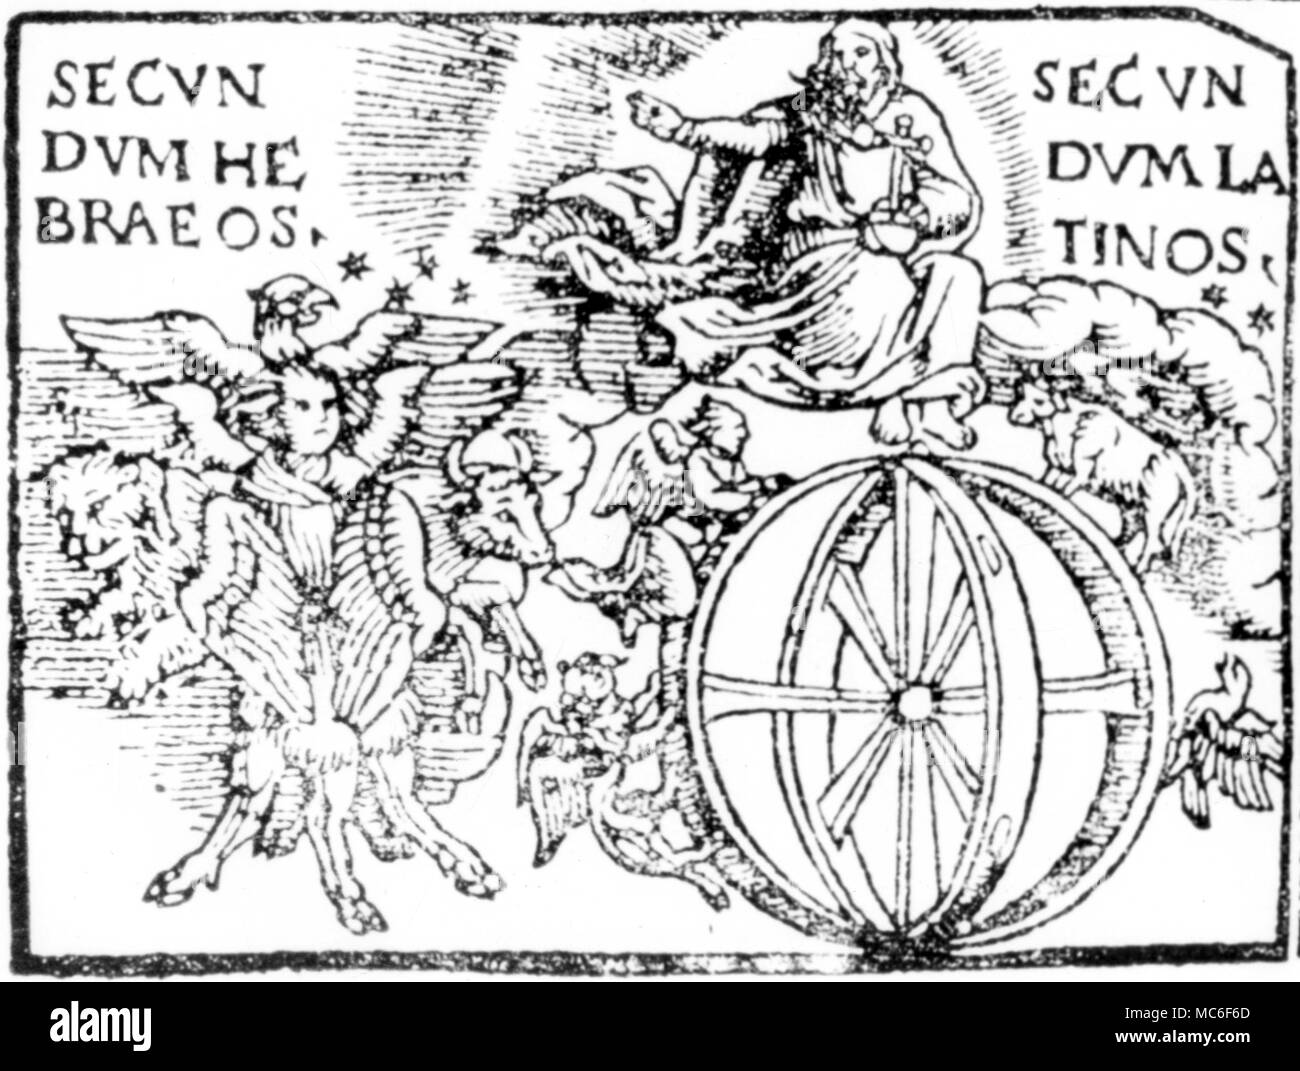 Detail vom frühen sechzehnten Jahrhundert Brevier, zeigt die Vision des Ezechiel, mit zwei Versionen der vier Kreaturen. Einige ufologen haben versucht, diese Vision als einer außerirdischen Wesen zu behaupten, aber es ist der Datensatz einer höheren kosmischen Vision der Seraphim und Cherubim. Stockfoto